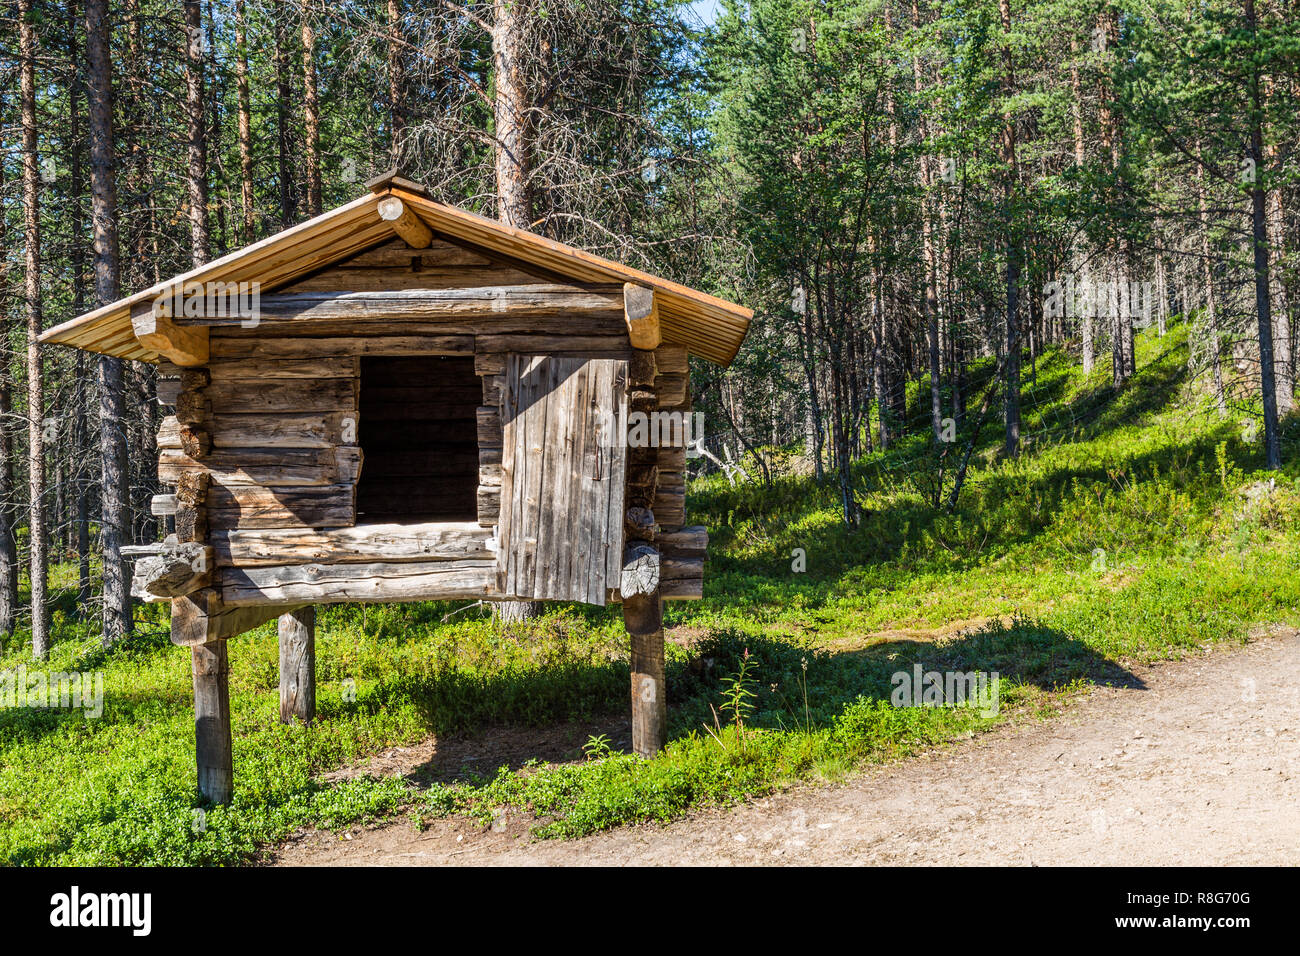 Petite maison traditionnelle sur poteaux de bois dans lequel les sami en Laponie enregistrer leur nourriture durant l'hiver. Banque D'Images